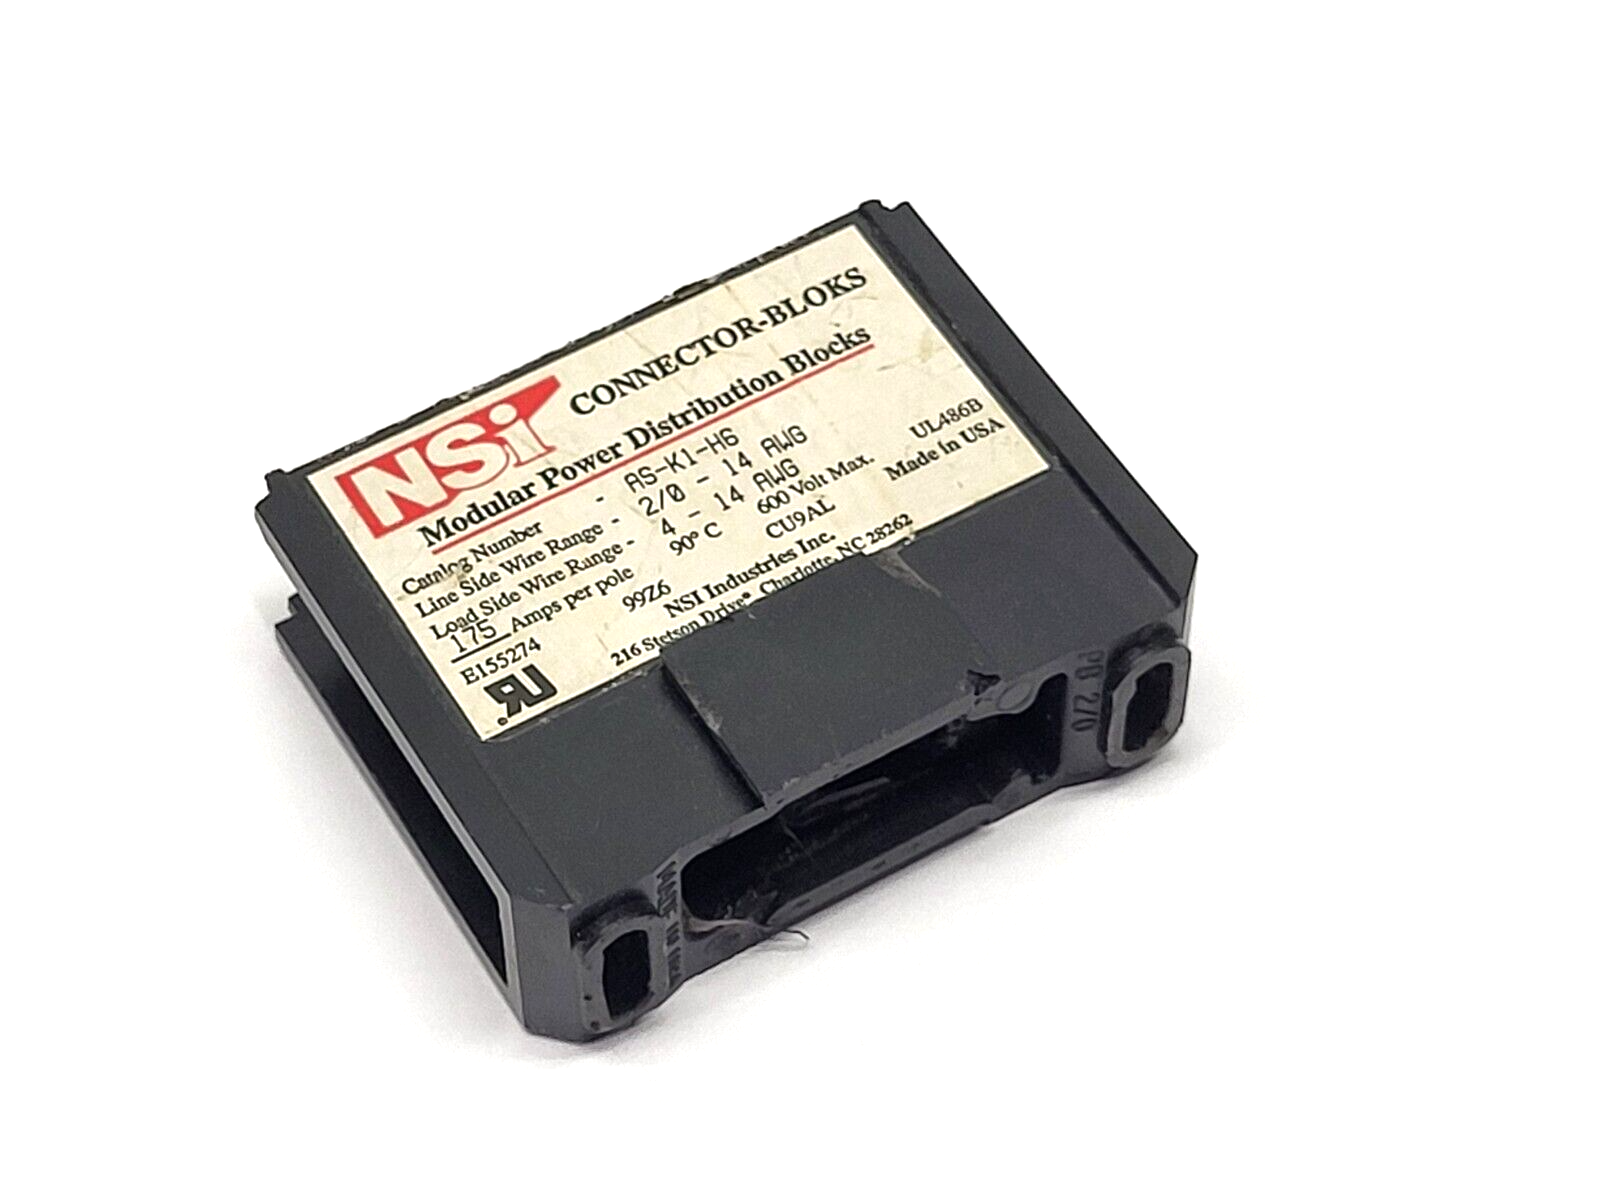 NSi AS-K1-H6 Modular Power Distribution Block